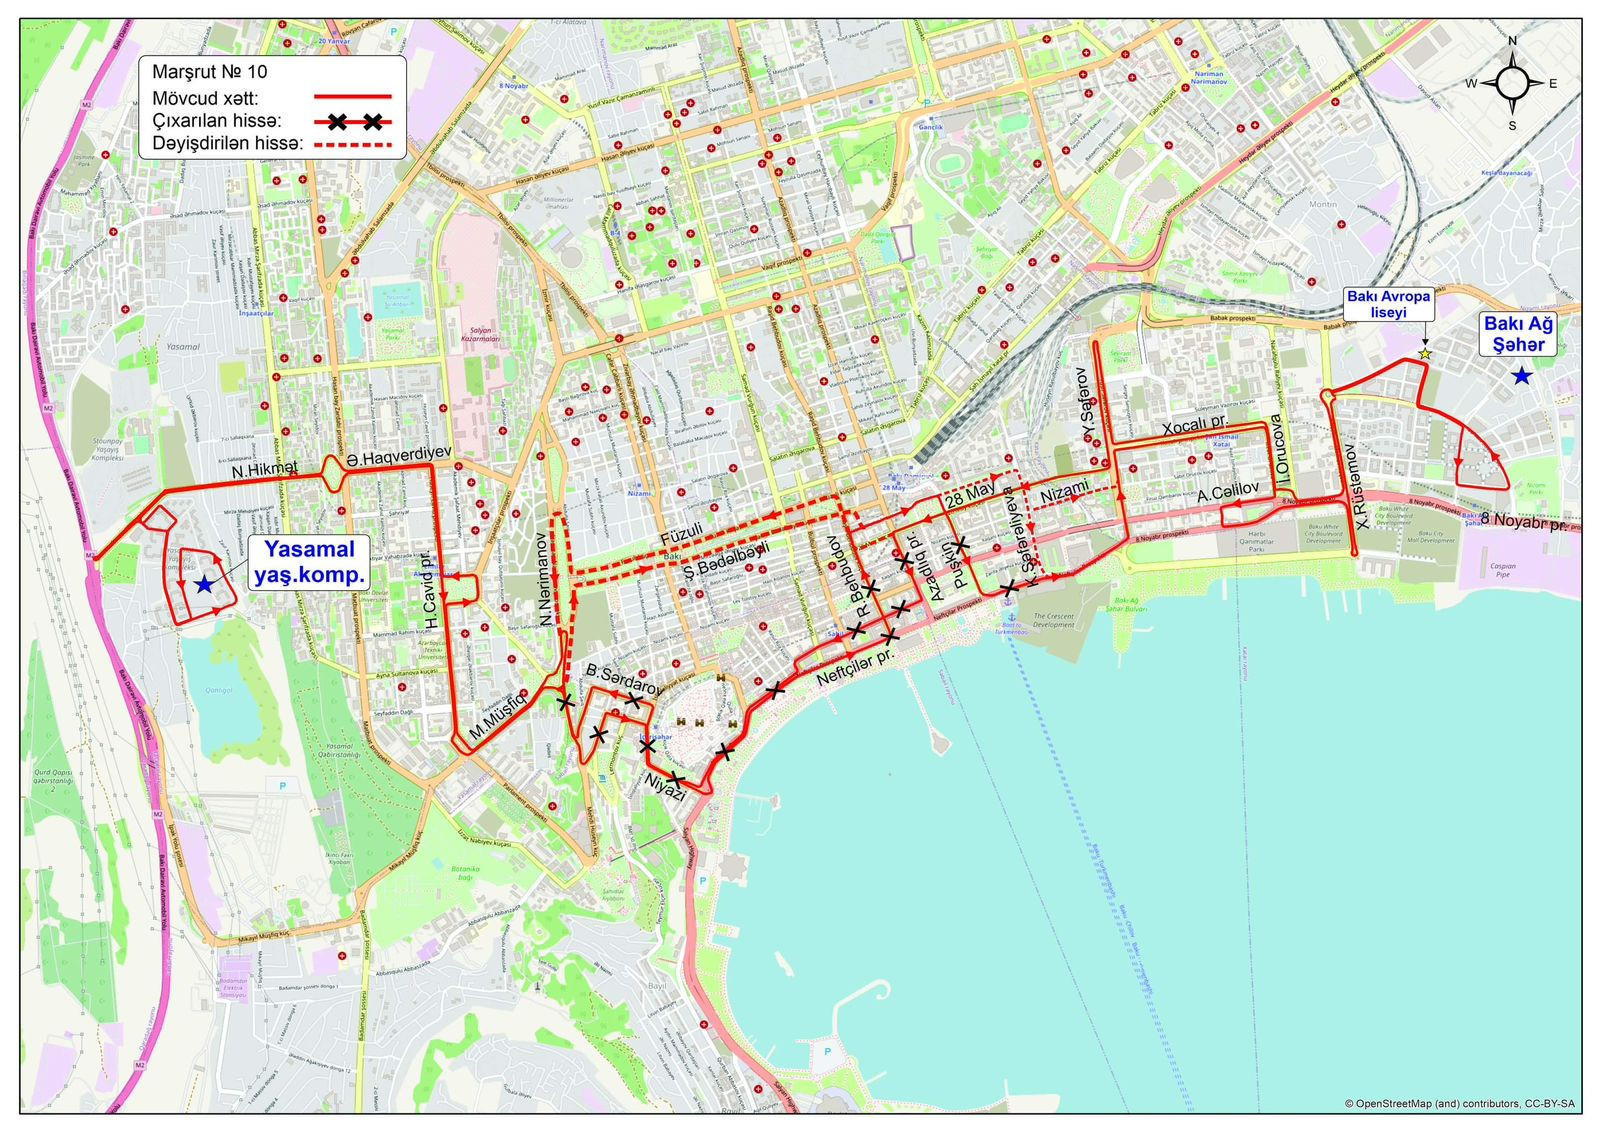 Движение маршрута 80. Схема движения общественного транспорта. Карта схема. Трасса формулы 1 в Баку на карте города. Схема автобусных маршрутов.